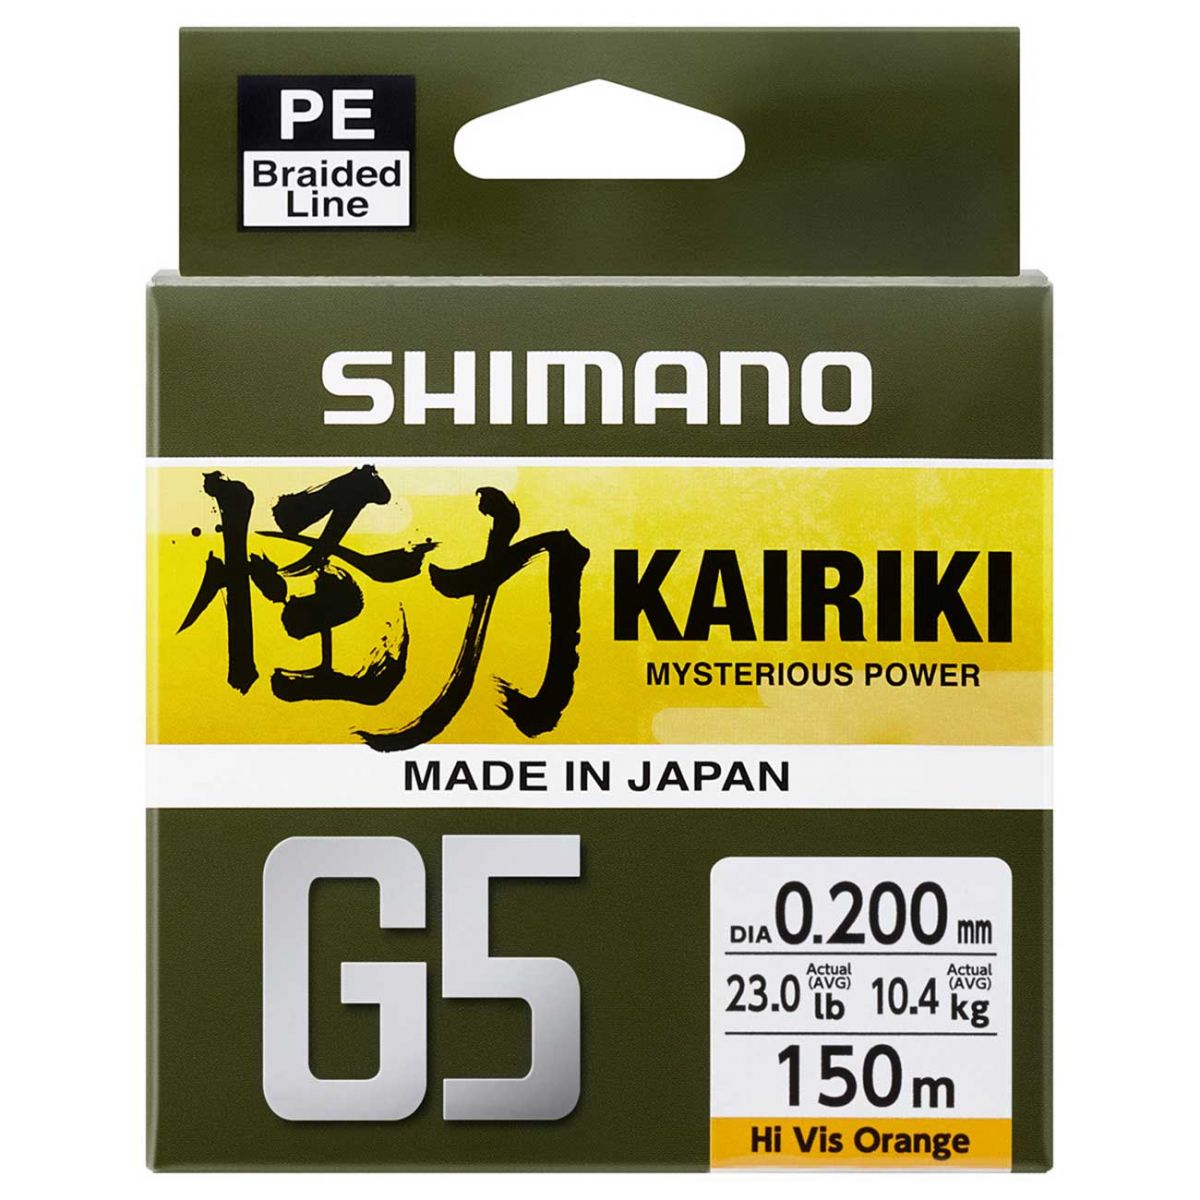 Shimano Kairiki G5 150mt  Gri Renk İp Misina,gri renk, 5 kat örgü seviyesi, tatlı su ve tuzlu su avlarınızda gönül rahatlığı ile kullanabileceğiniz made in japan ip misina serisi